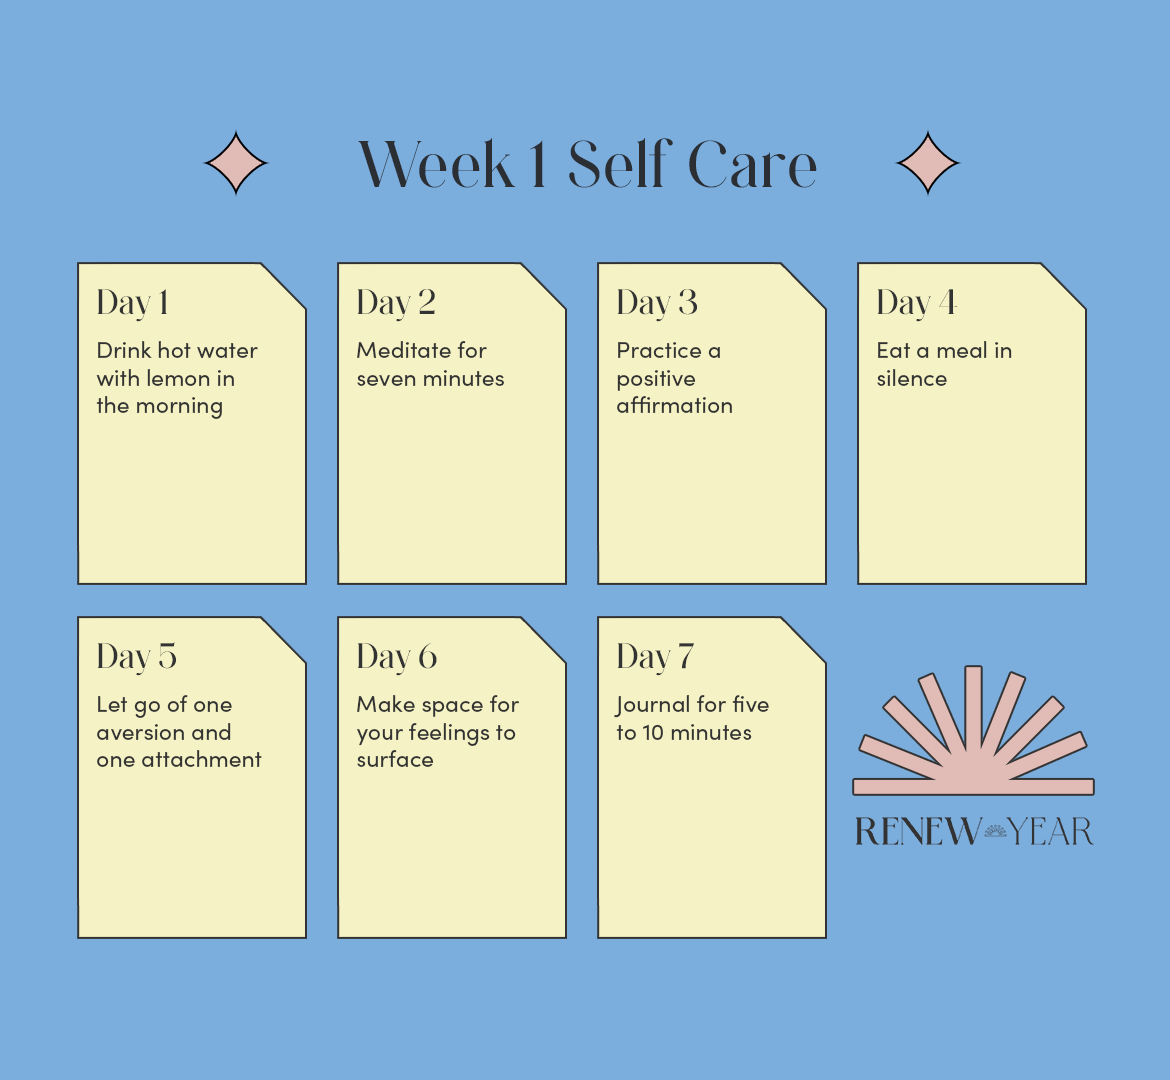 renew year 2023 self care week 1 calendar